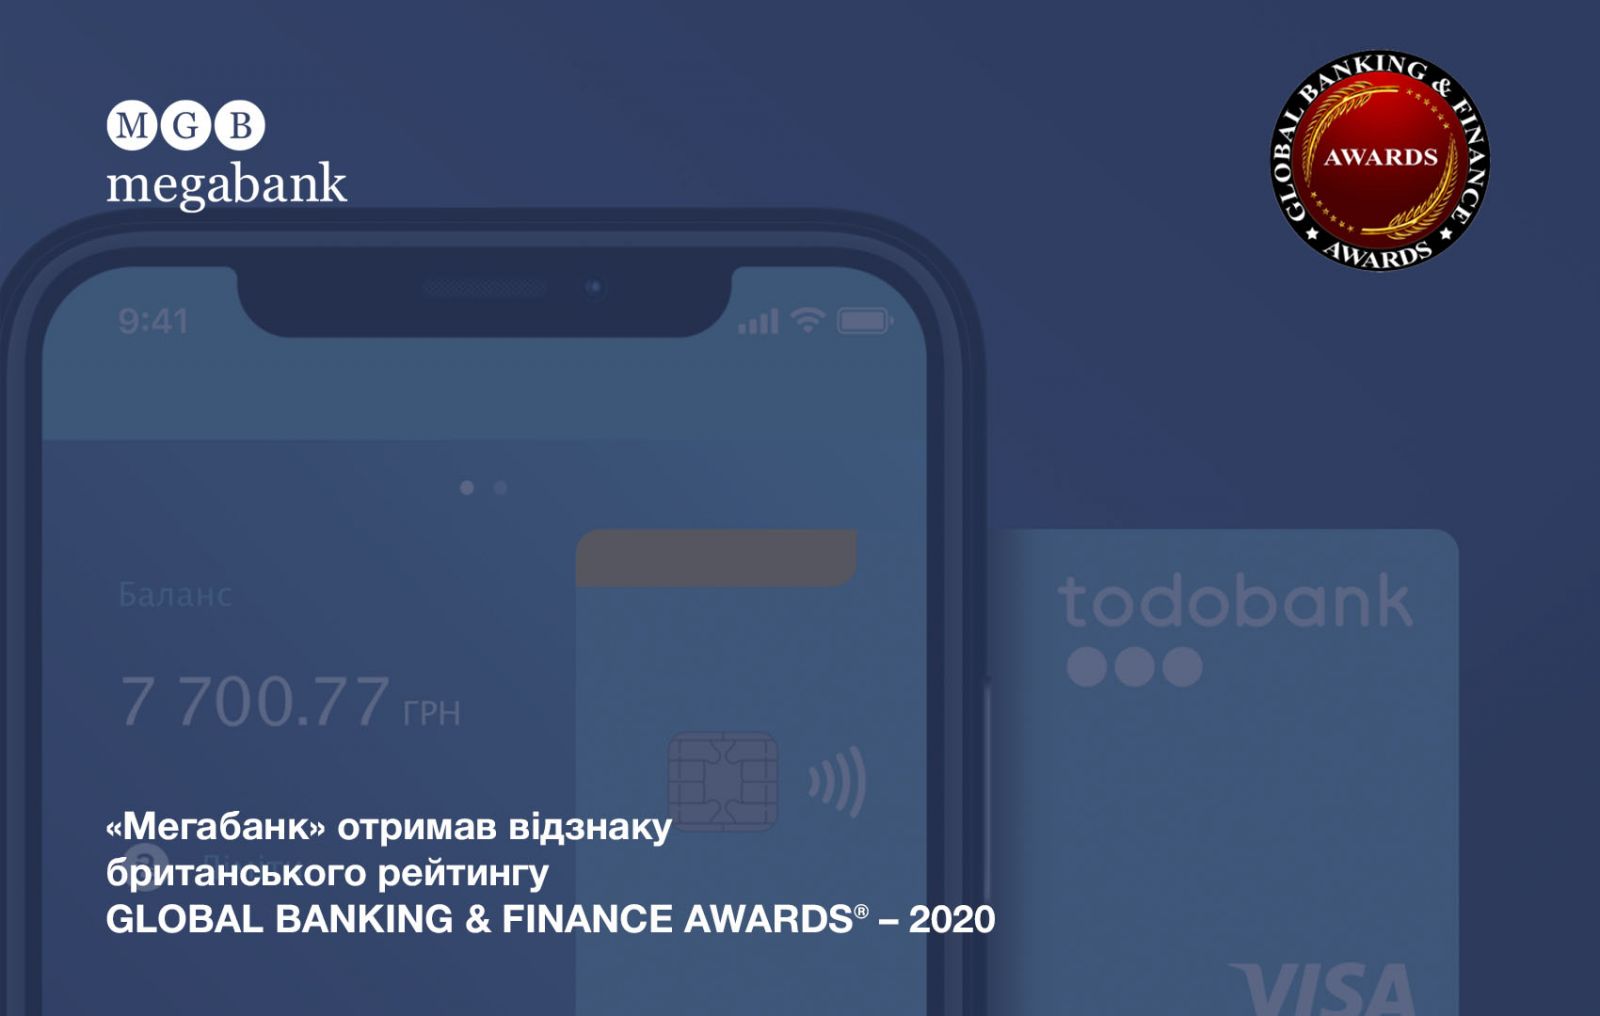 "Мегабанк" отмечен наградой британской премии GLOBAL BANKING & FINANCE AWARDS® - 2020